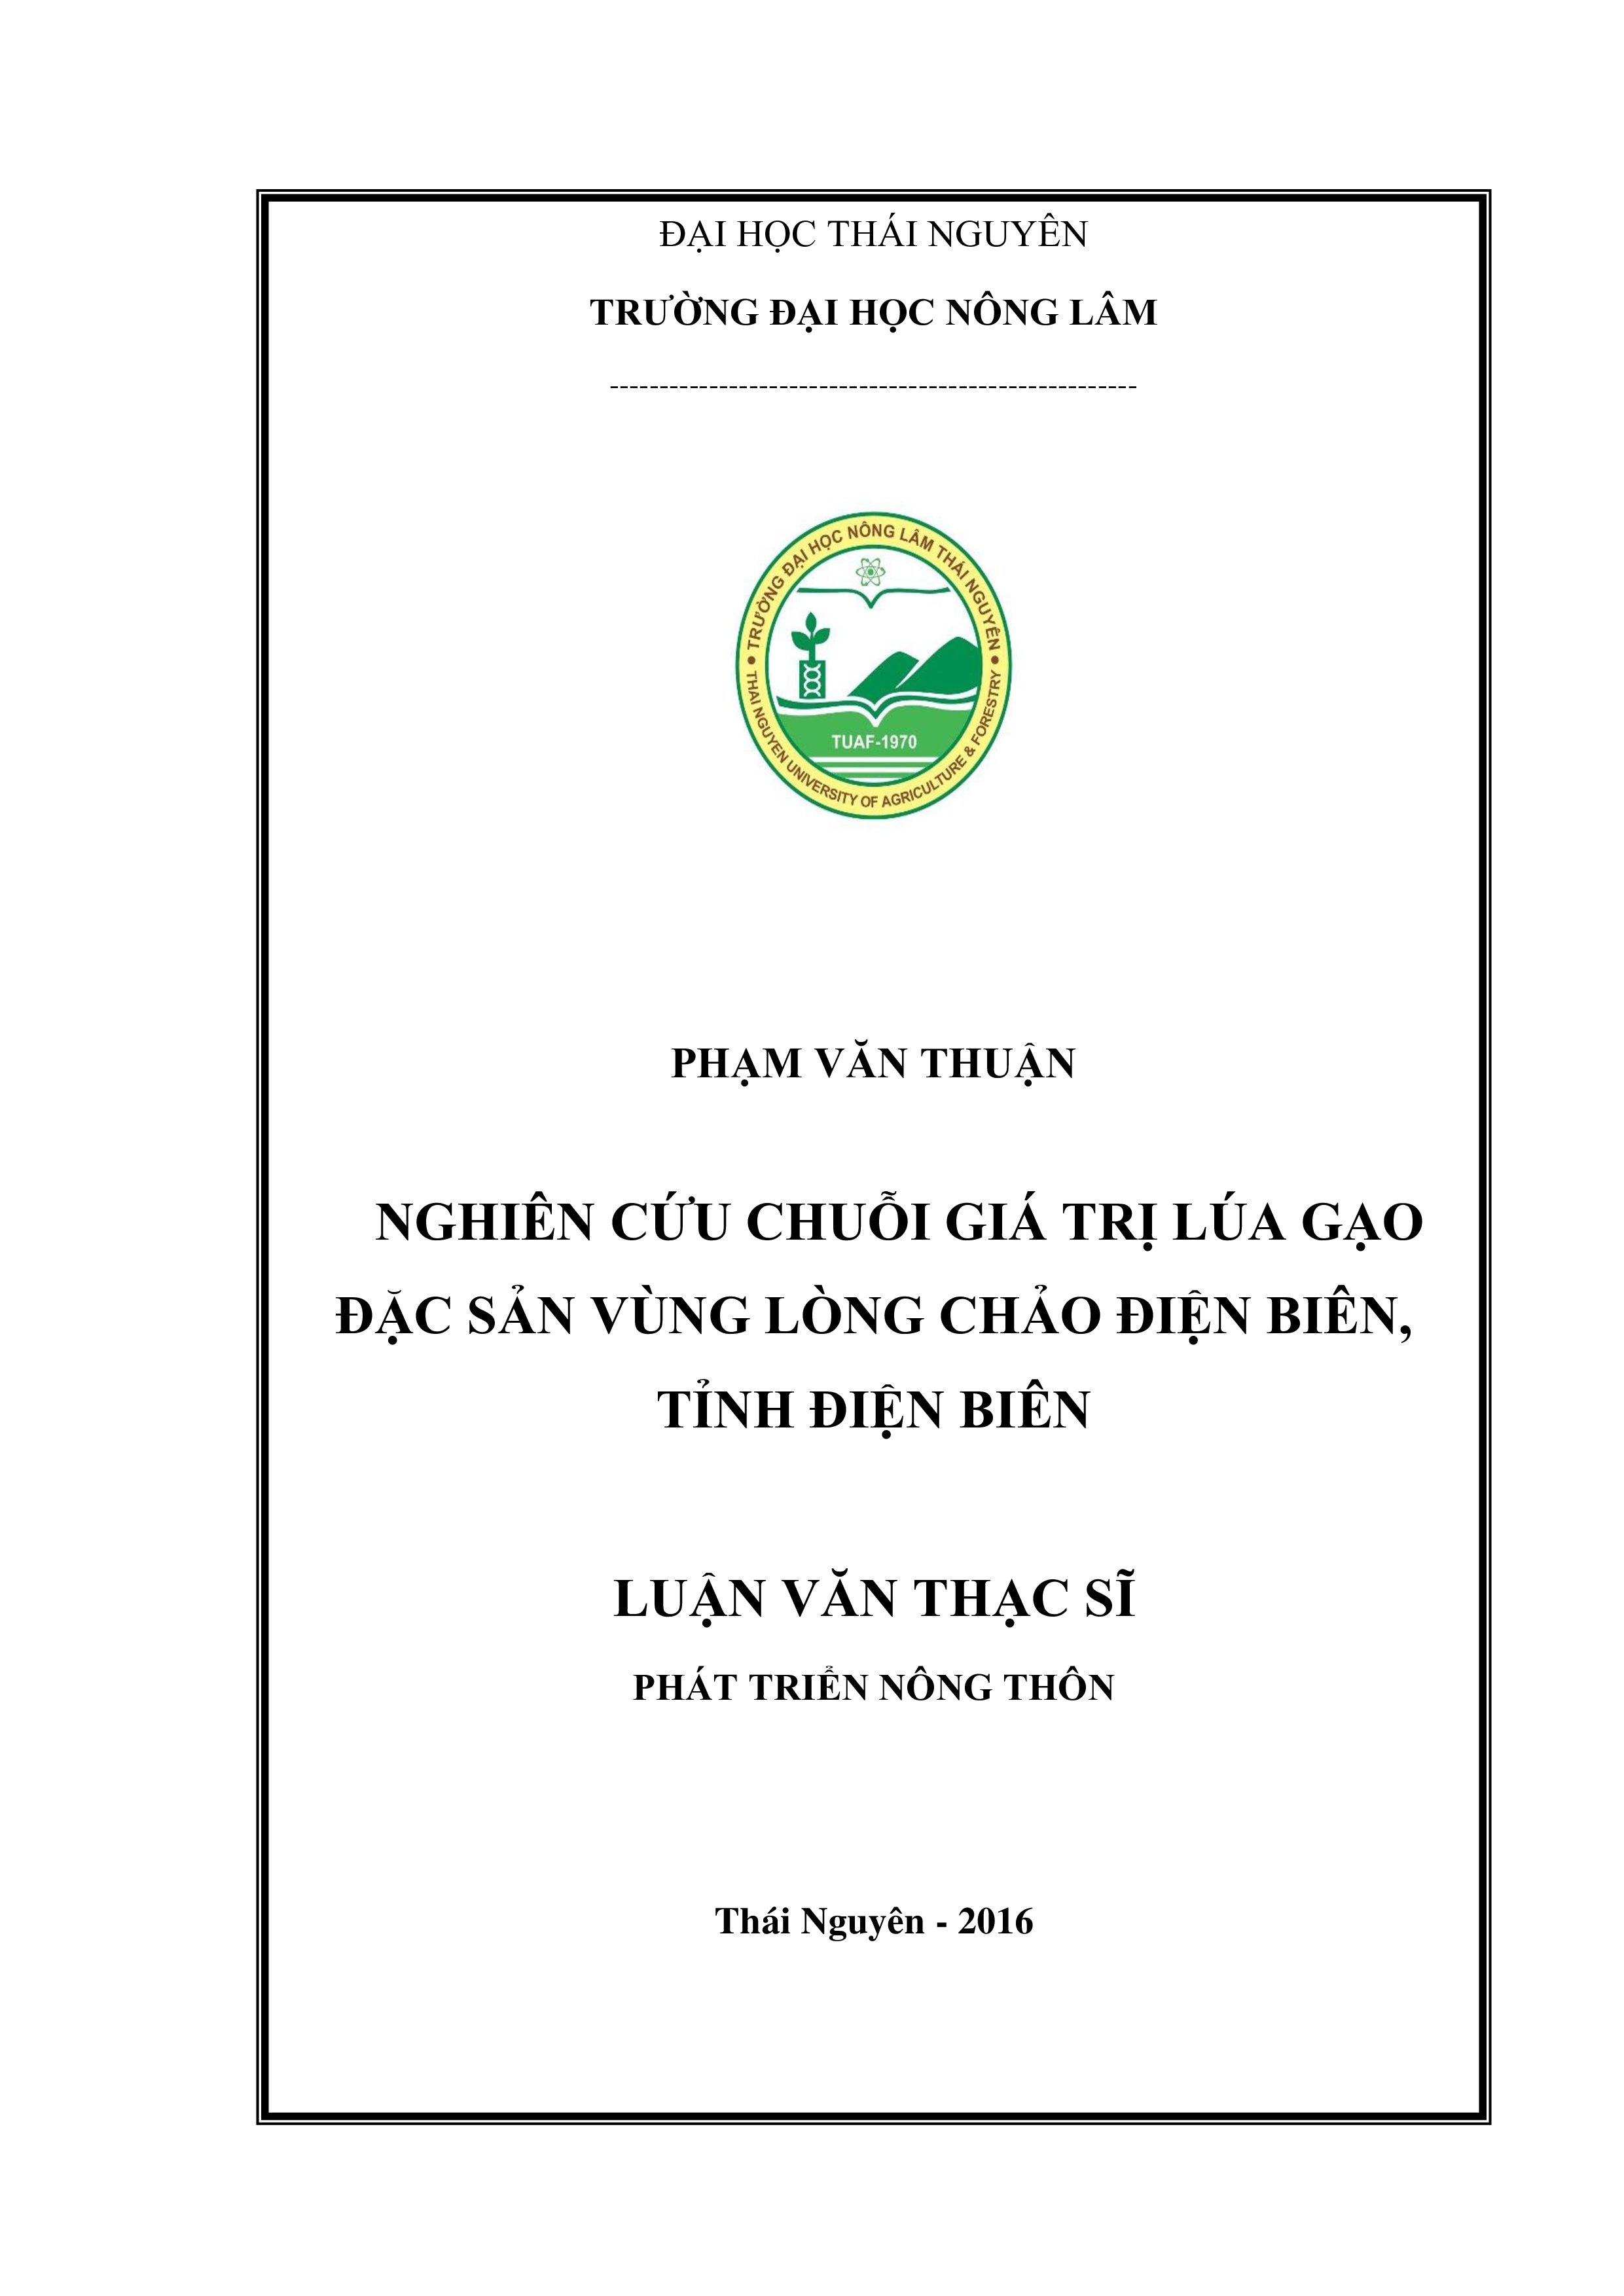 Nghiên cứu chuỗi giá trị lúa gạo đặc sản vùng lòng  chảo Điện Biên, tỉnh Điện Biên